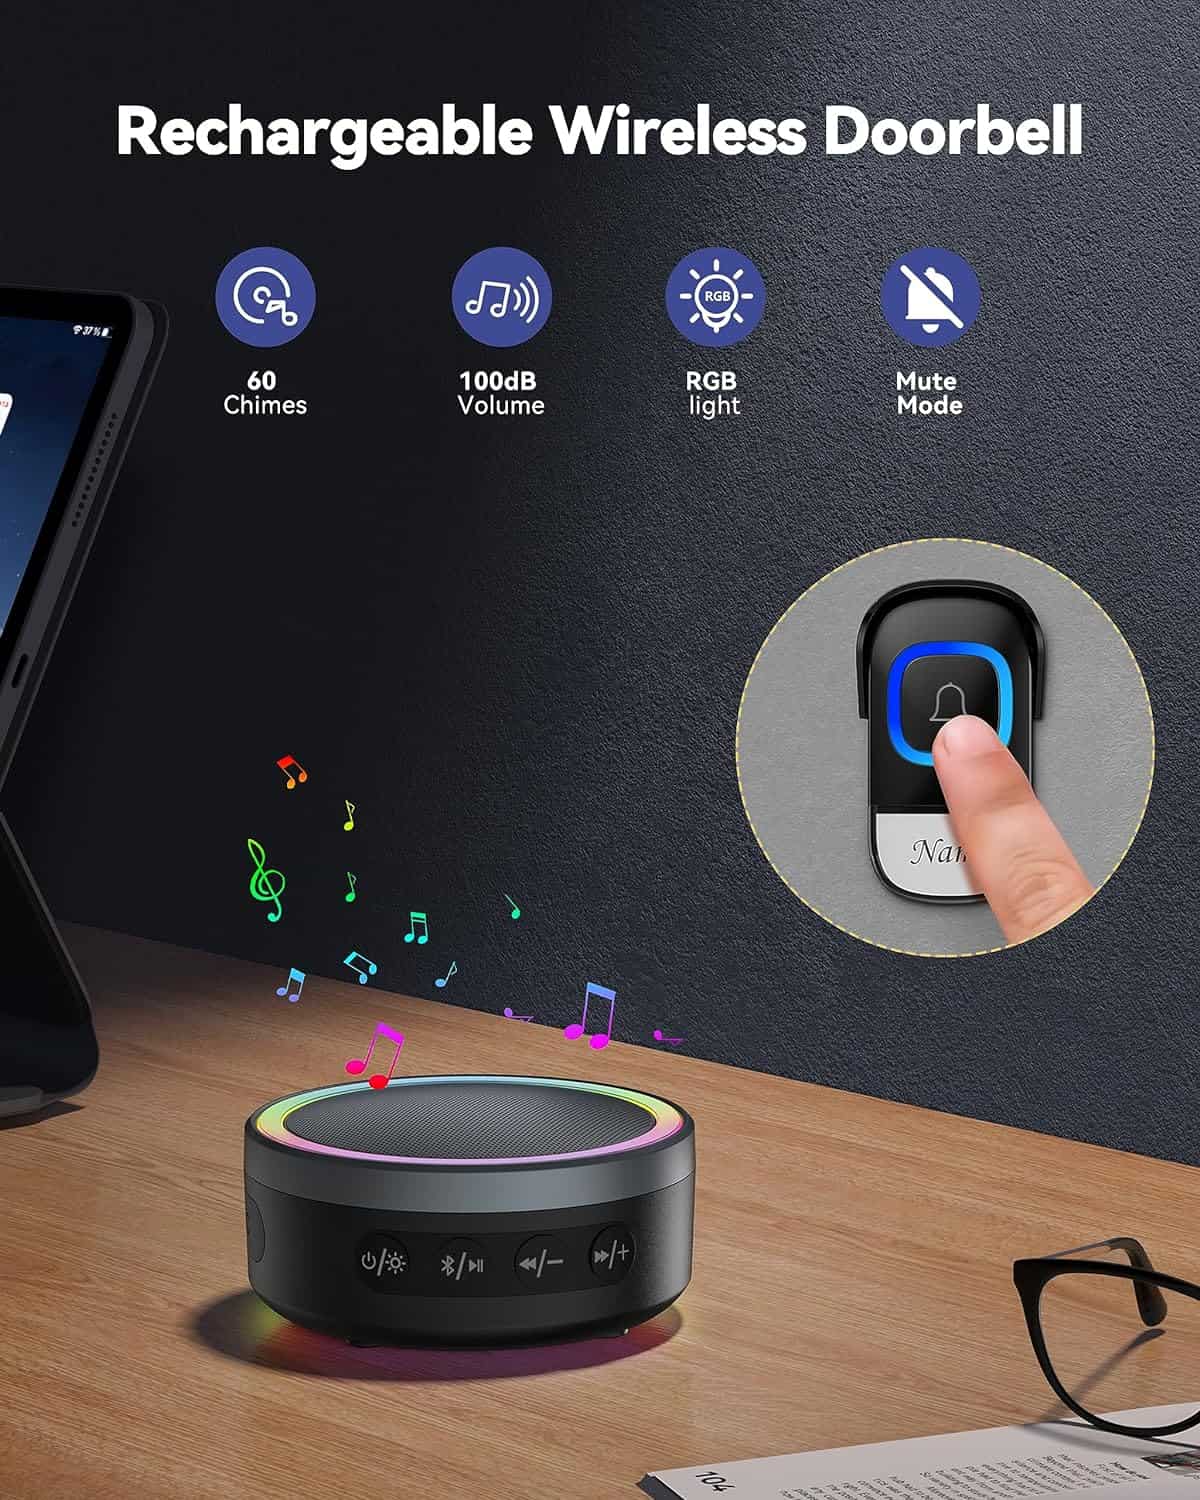 TECKNET 2-in-1 Wireless Doorbell with Bluetooth Speaker